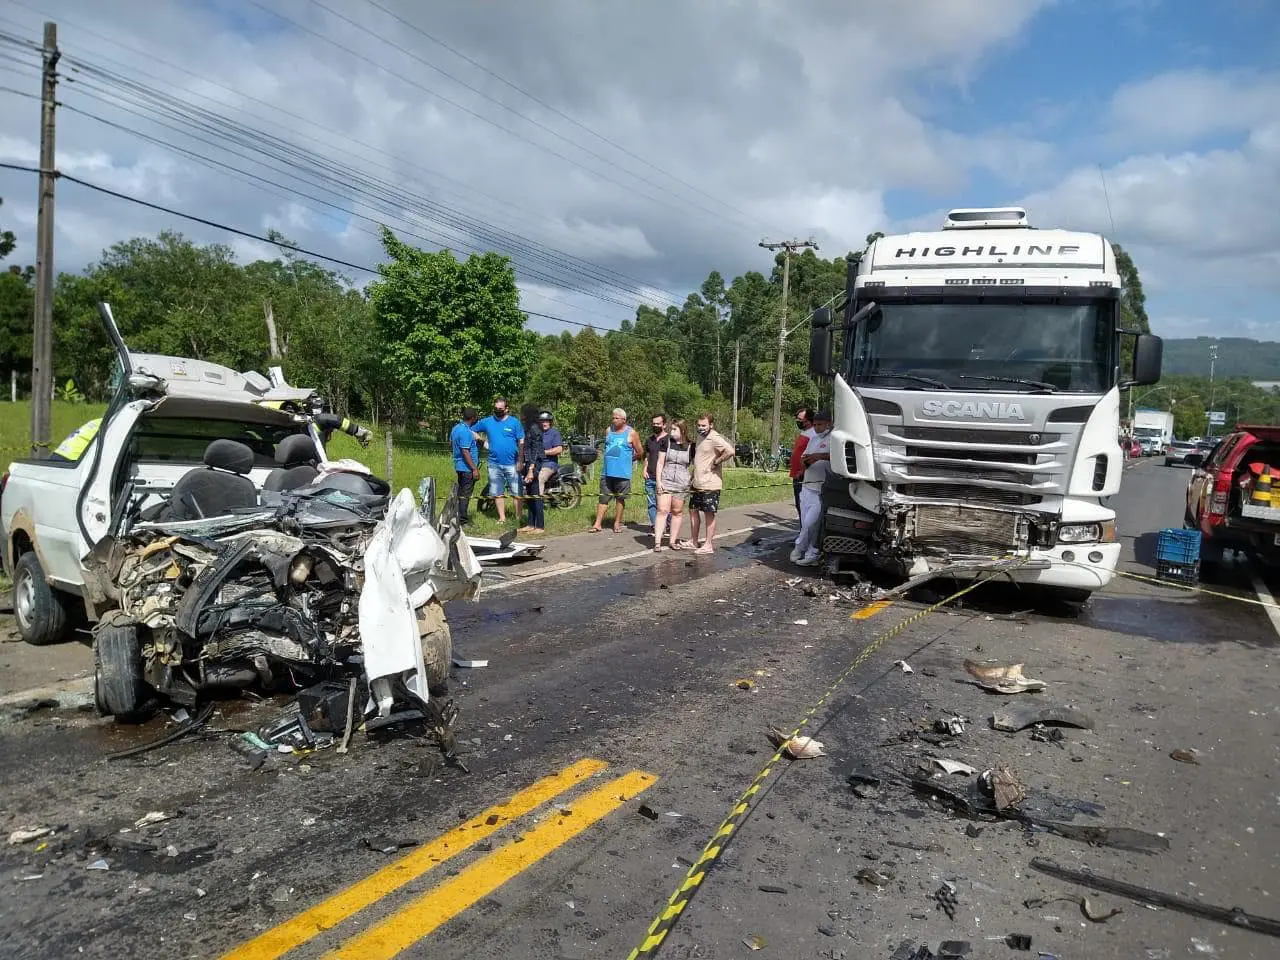 Neoveneziano morre vítima de acidente de trânsito em Criciúma